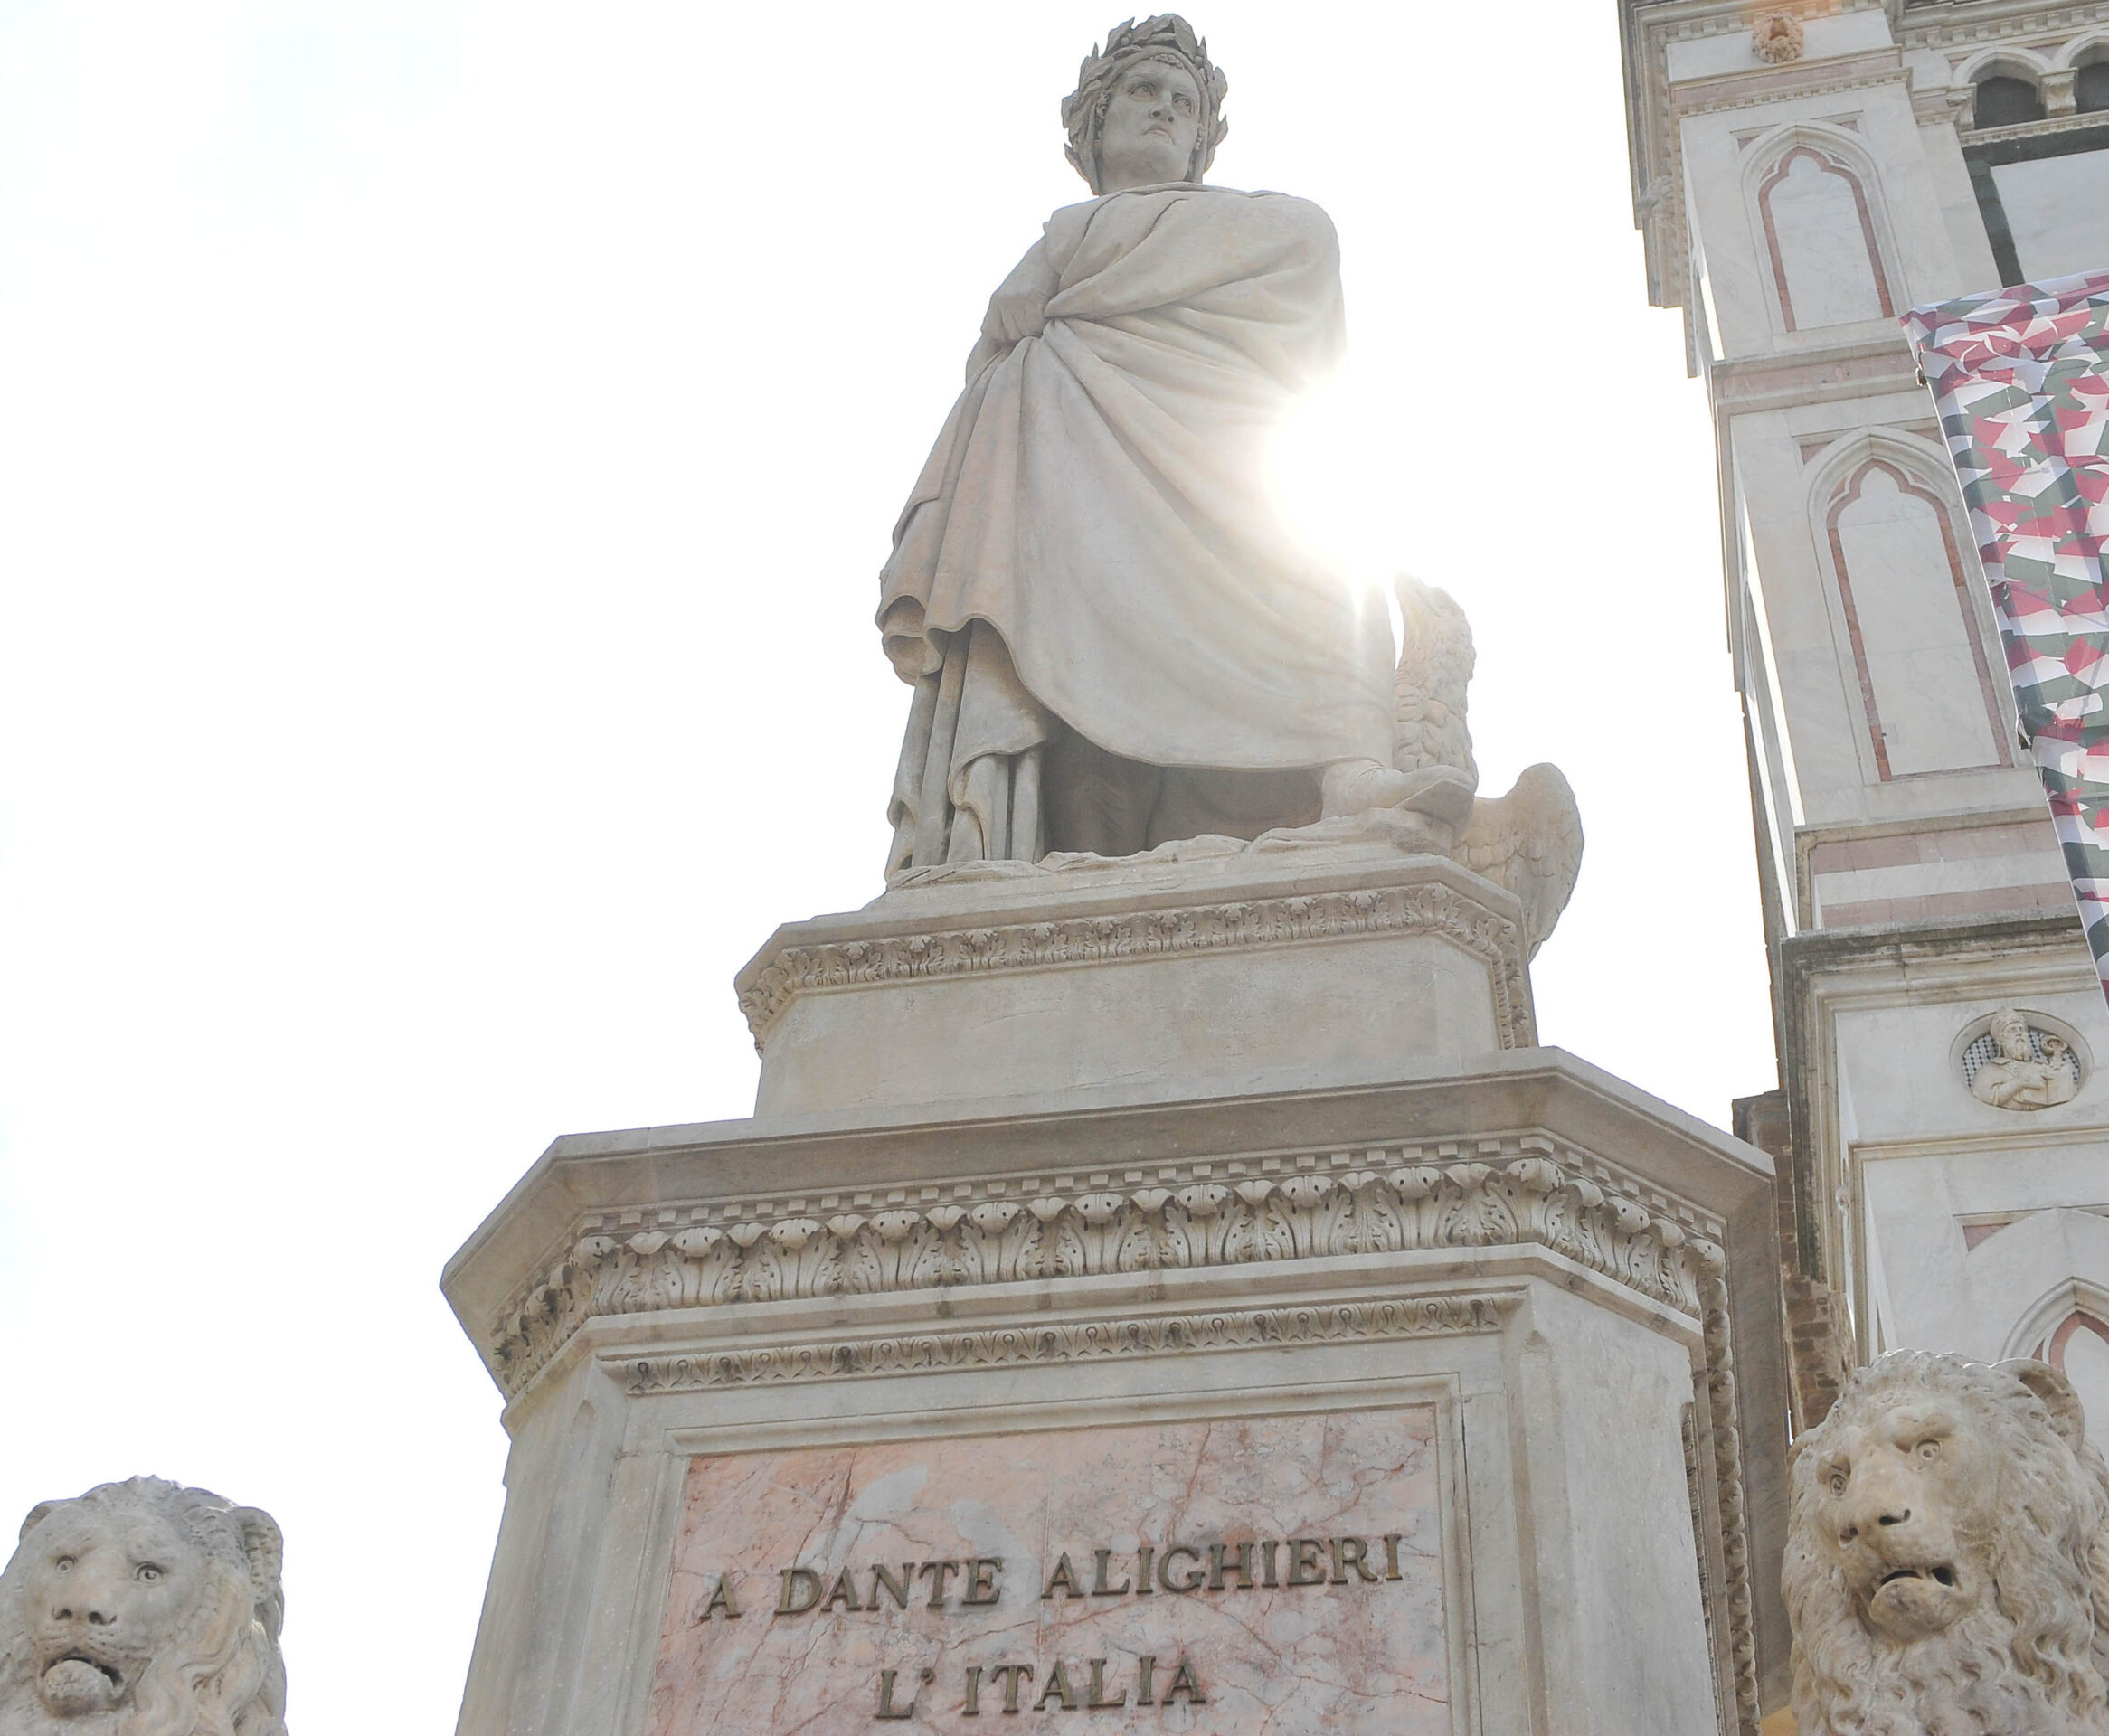 Perché il 25 marzo è il Dantedì, giornata nazionale dedicata a Dante Alighieri